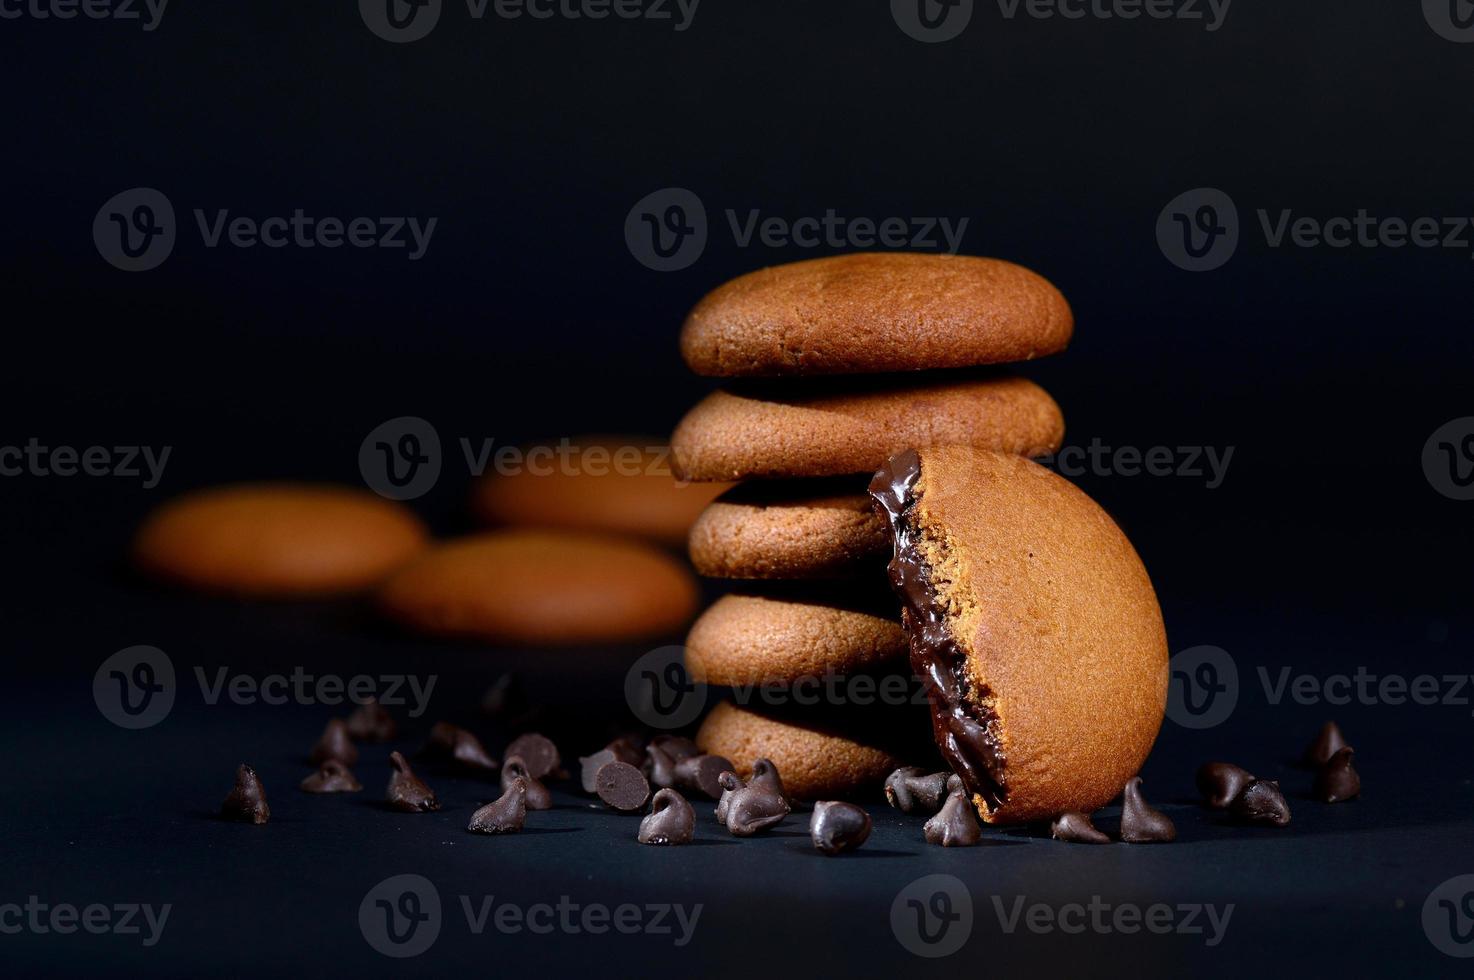 koekjes - stapel heerlijke roomkoekjes gevuld met chocoladeroom op zwarte achtergrond foto